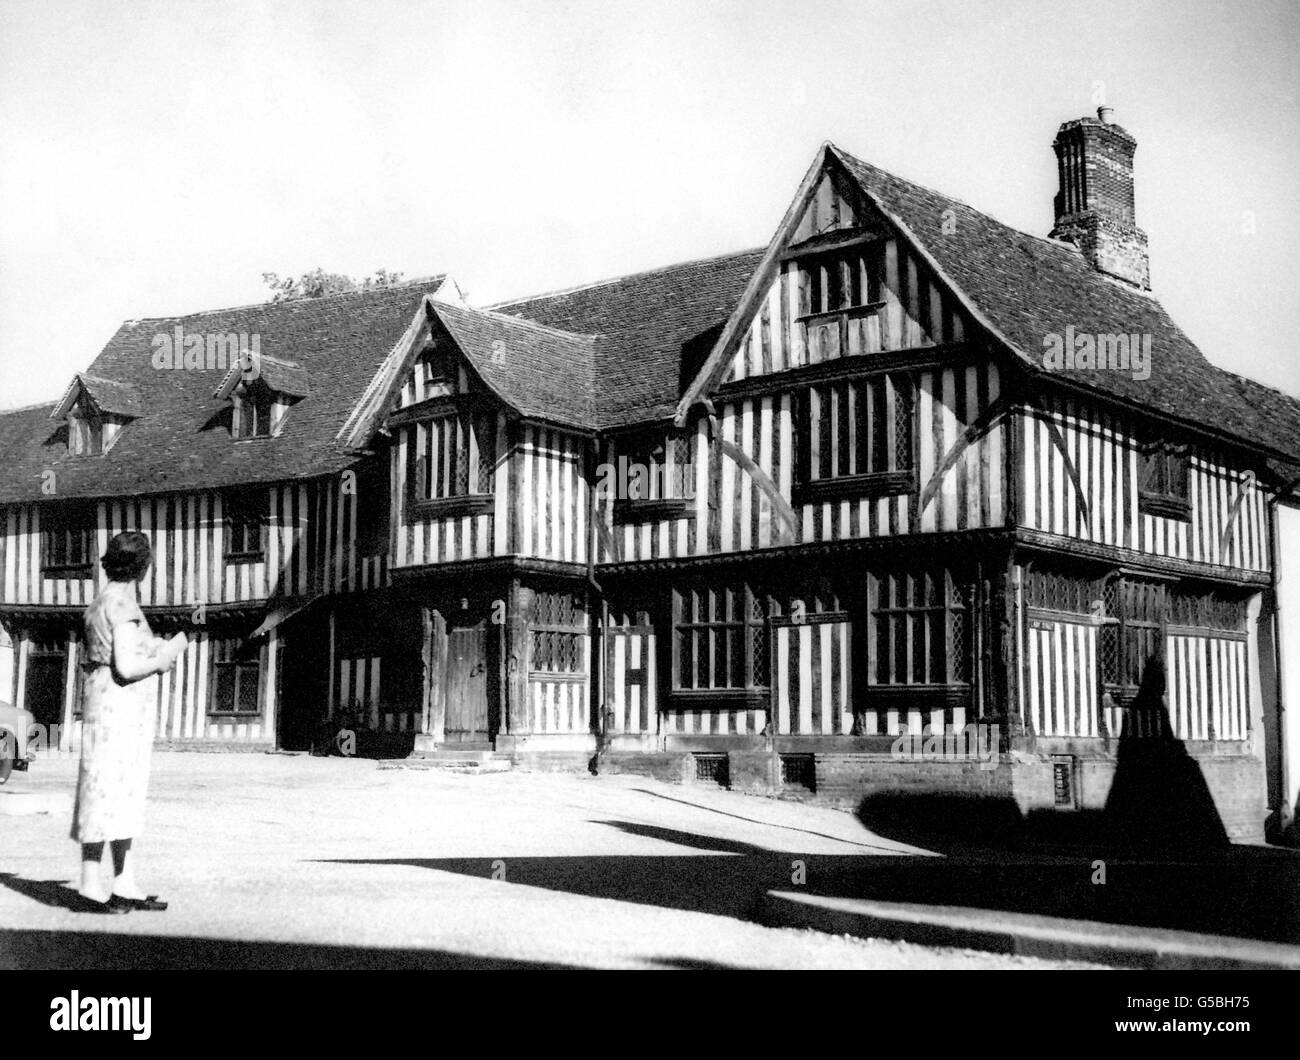 Die Fachwerkgilde in Lavenham, Suffolk, die der Tuchgilde diente, als das Dorf dem Tuchhandel seinen Wohlstand verdankte. Es ist eines der vielen Fachwerkgebäude im Dorf, wo einige der schönsten Beispiele der mittelalterlichen und Tudor-Architektur zu sehen sind. Stockfoto